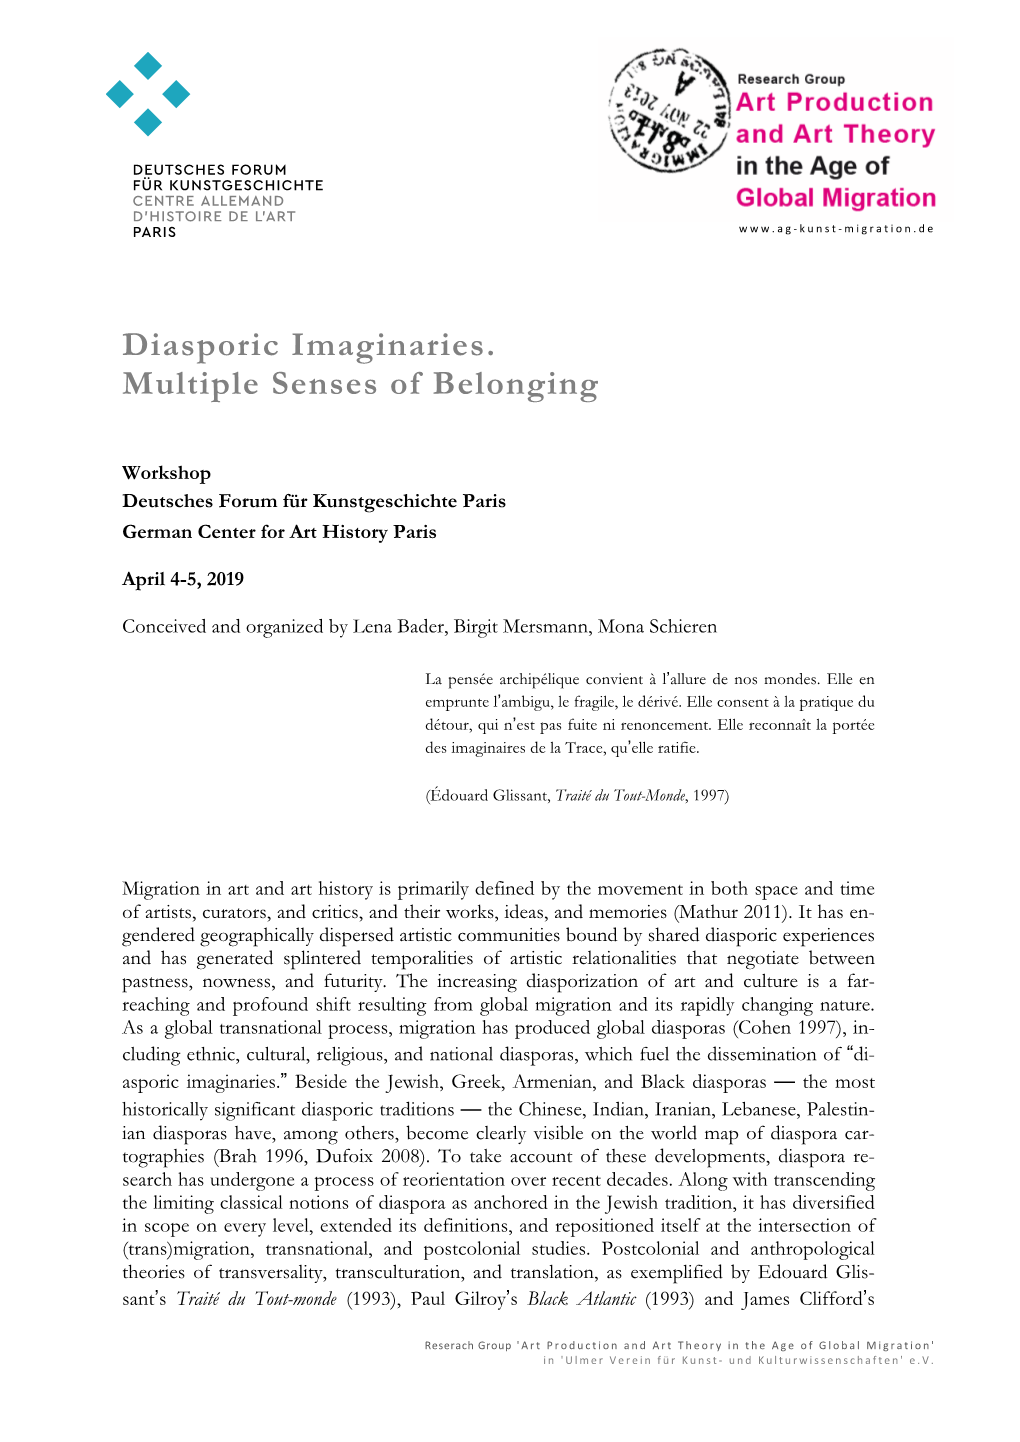 Diasporic Imaginaries. Multiple Senses of Belonging